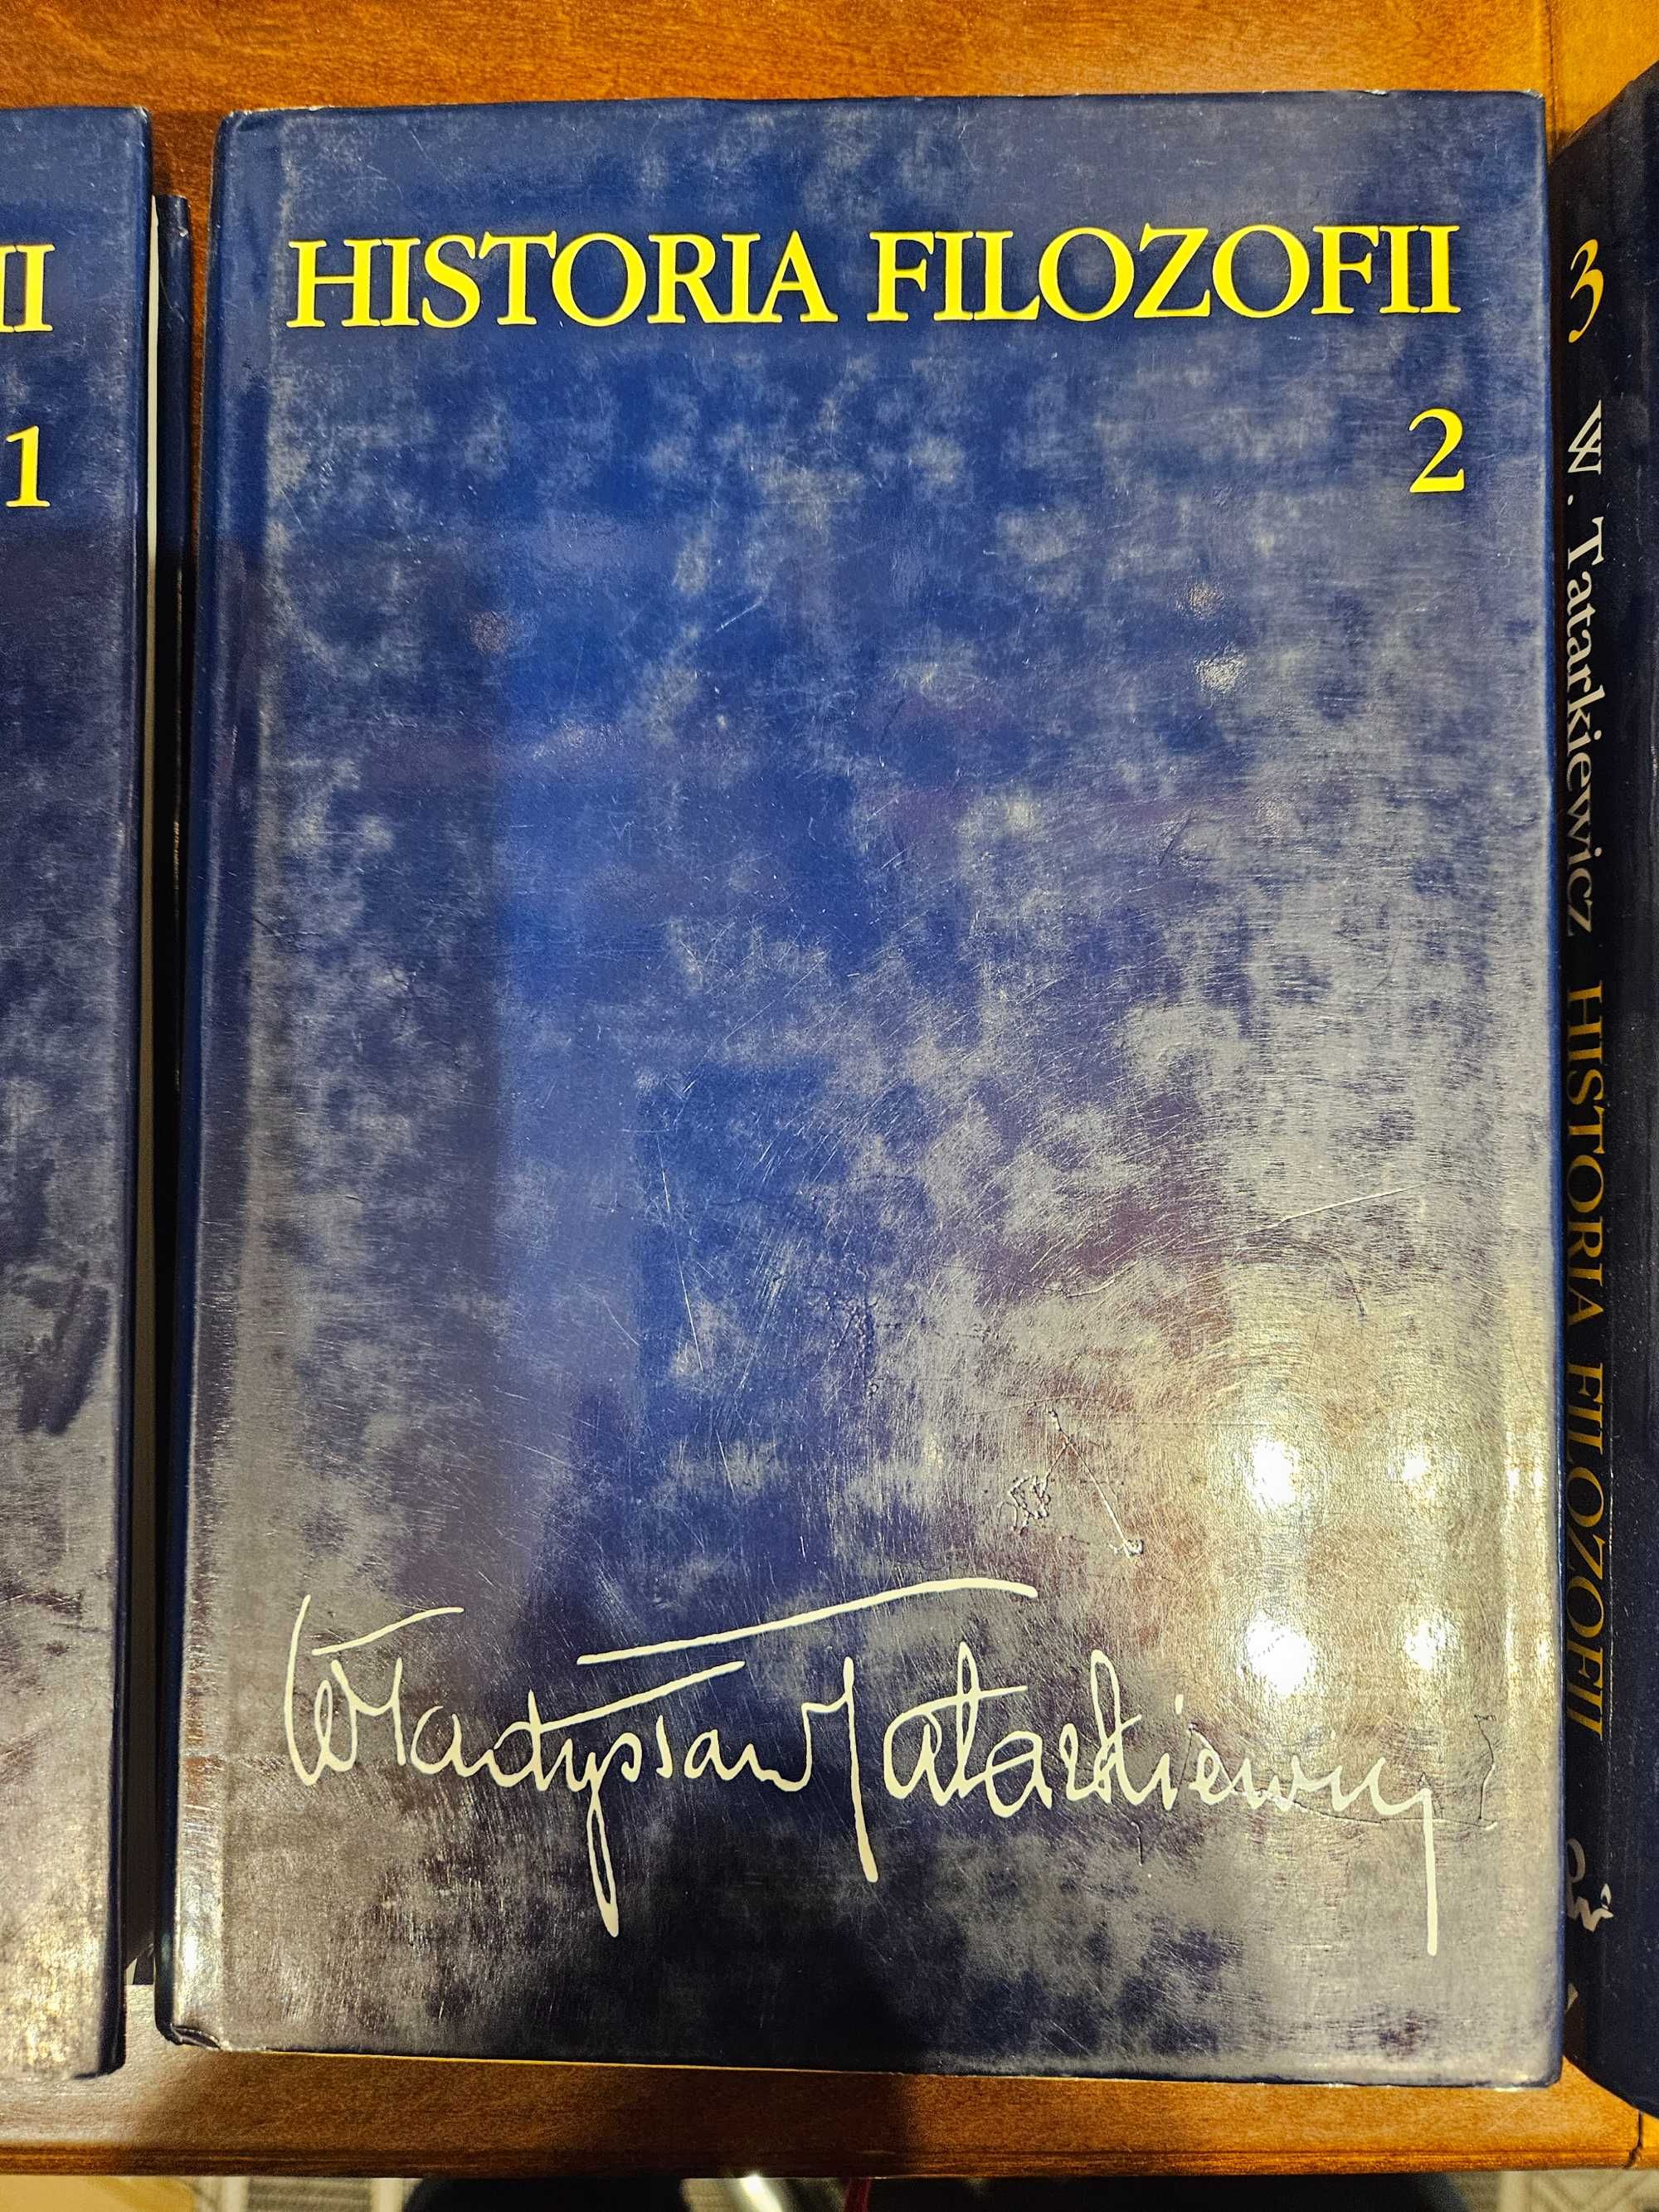 Historia Filozofii Władysław Tatarkiewicz Tomy I + II + III